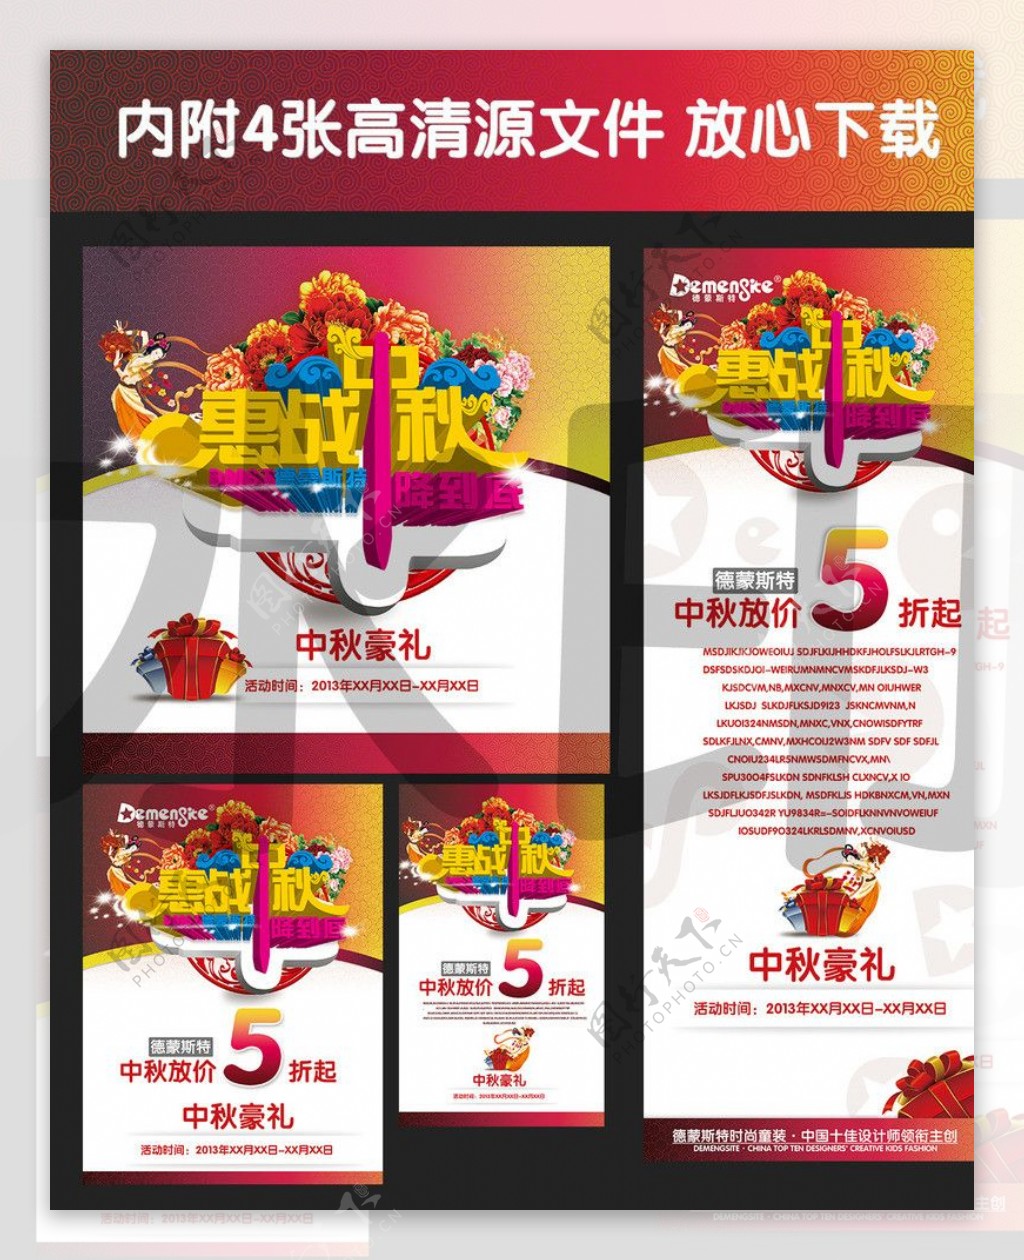 中秋节促销广告模板图片